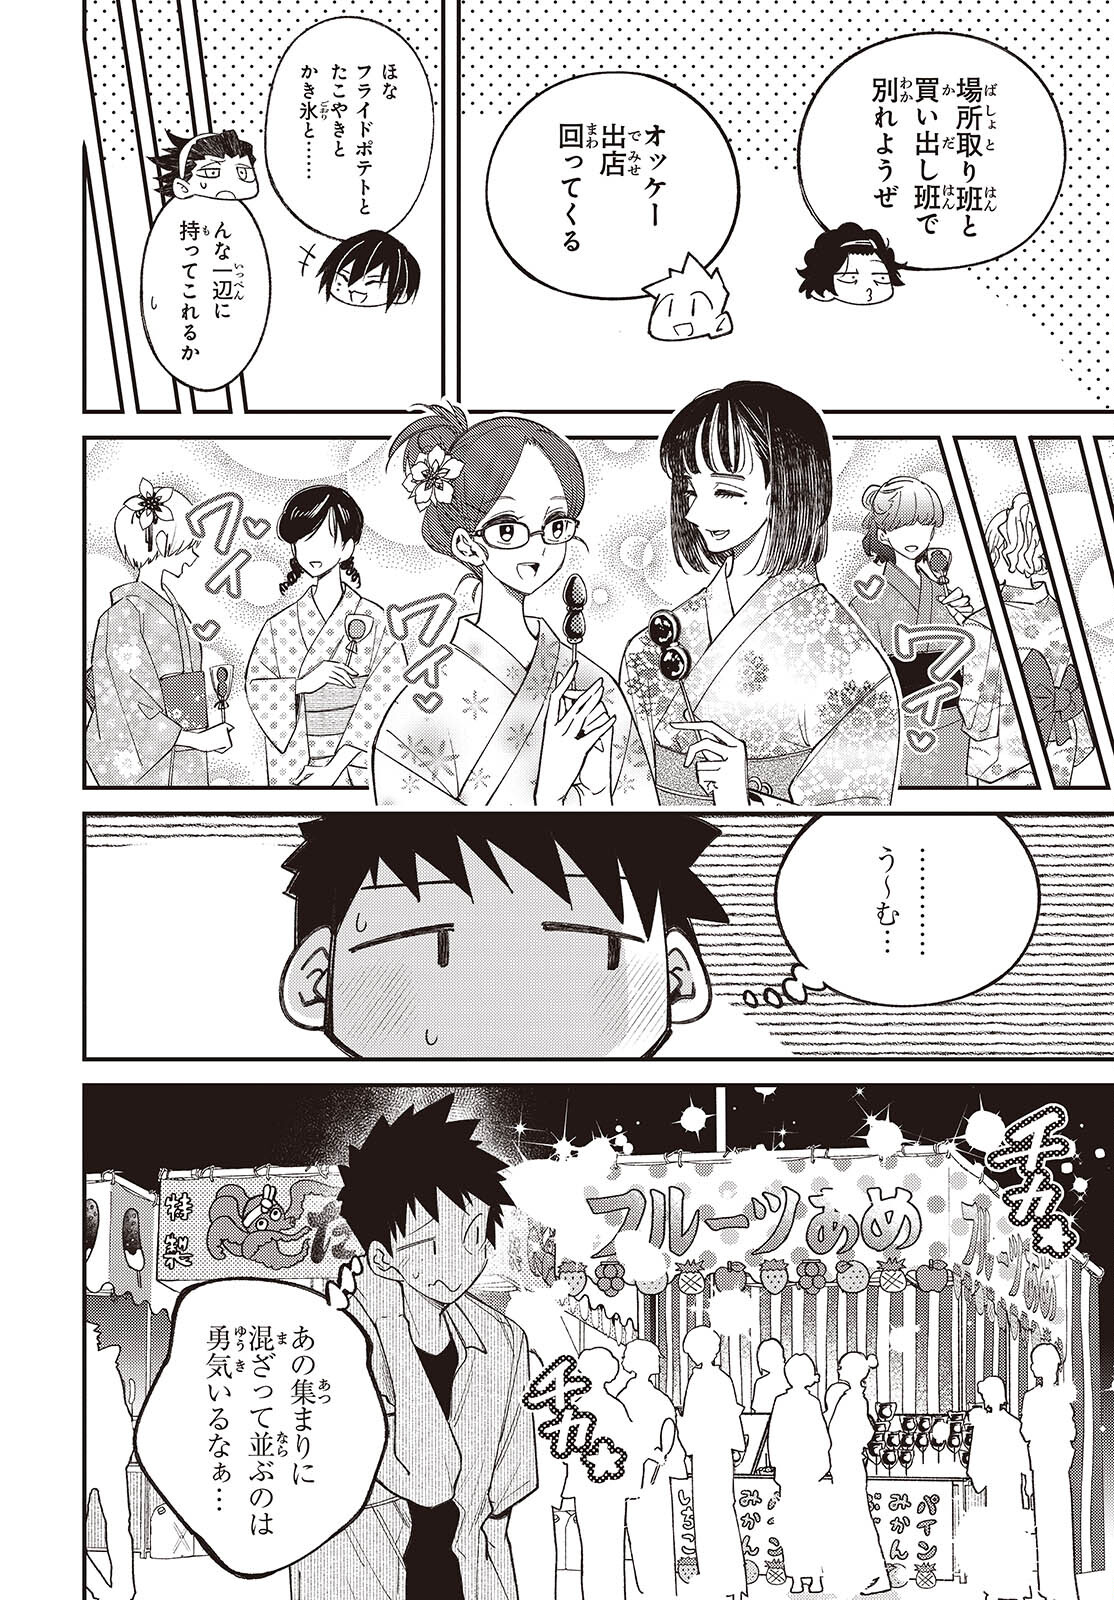 Ikimono-suki no Anima-san ni wa Honno Choppiri Doku ga aru - Chapter 10 - Page 4